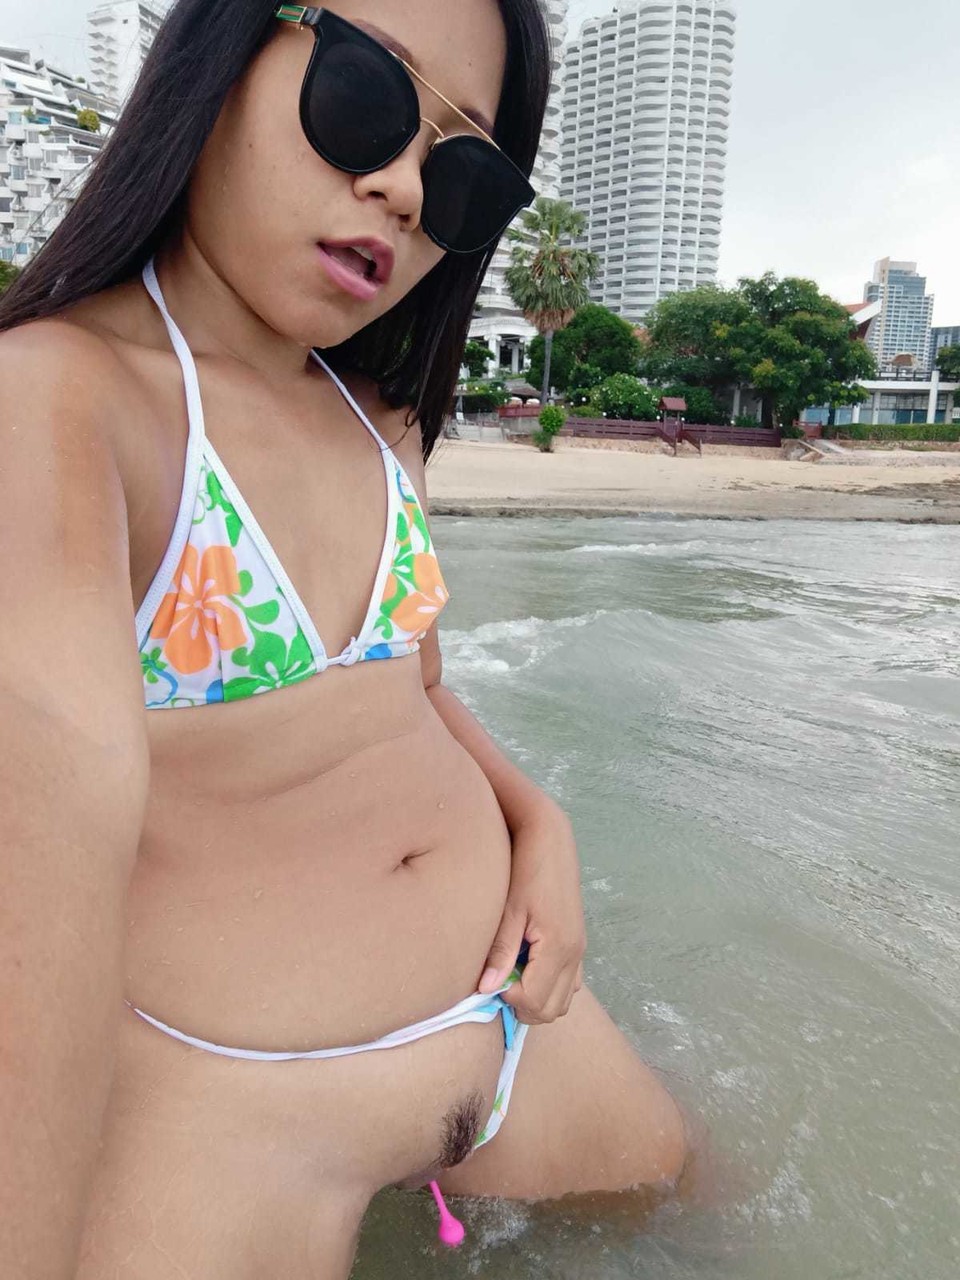 Gorgeous Asian amateur Kiki Asia shows her hot ass in a bikini at the beach zdjęcie porno #425545190 | TukTuk Thailand Pics, Kiki Asia, Thai, mobilne porno